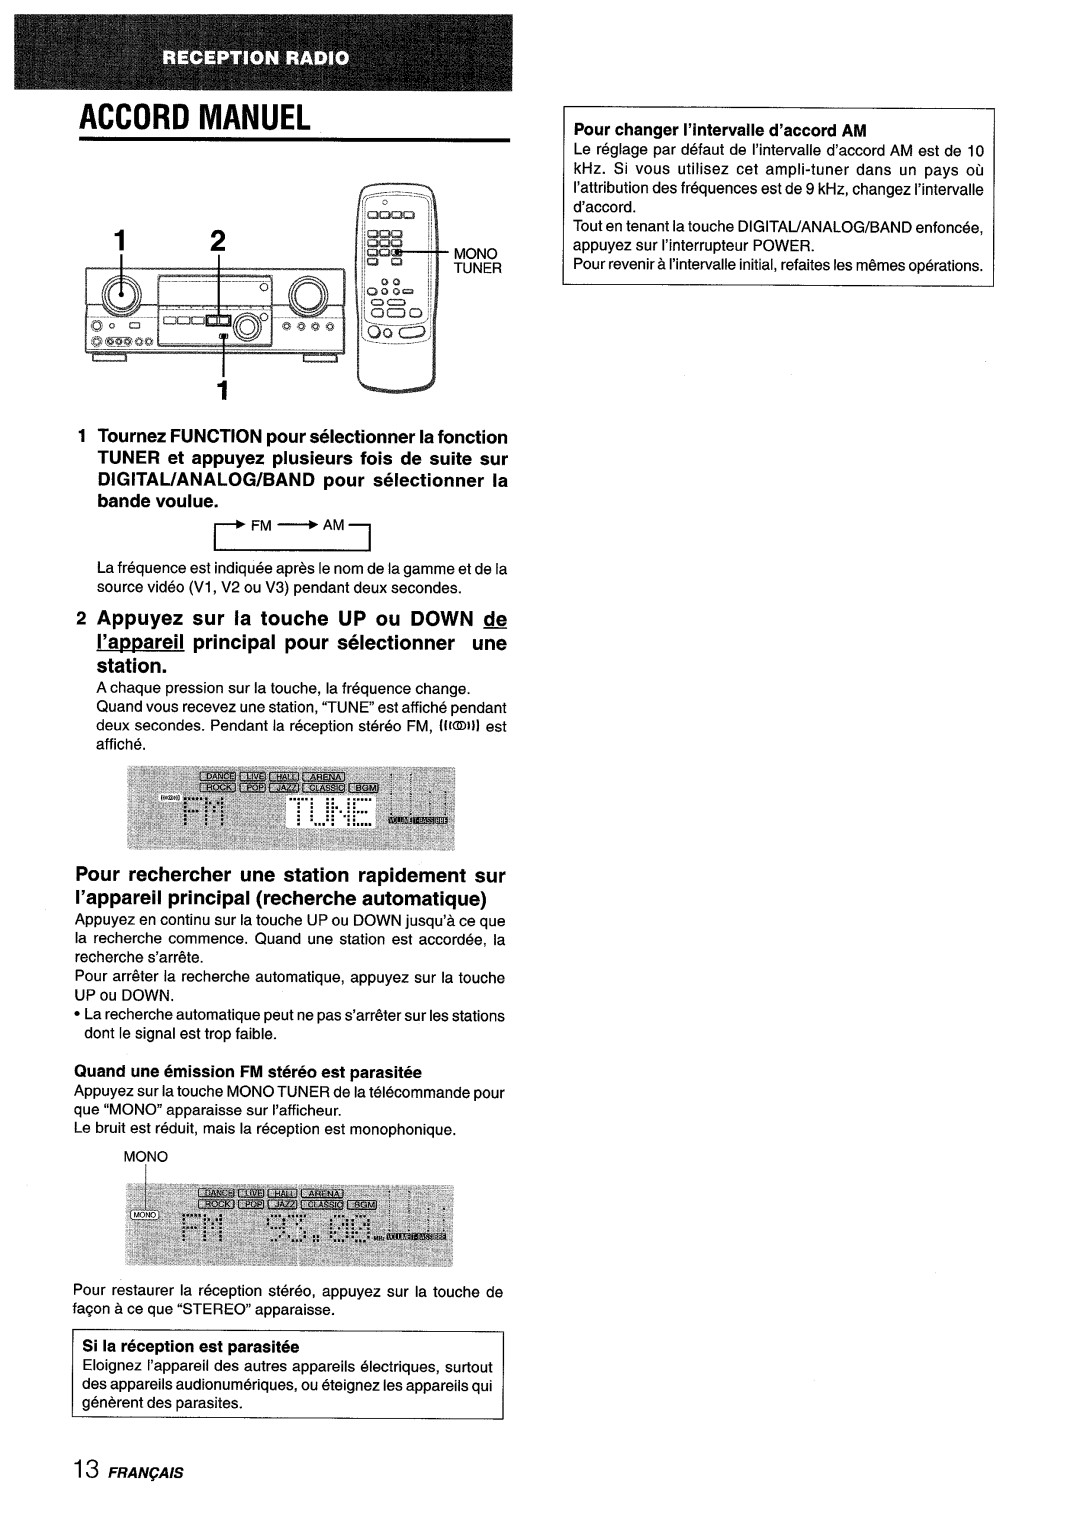 Sony AV-DV75 manual Accord Manuel, I’appareil principal pour selectionner une station, Appuyez sur la touche UP ou DOWN fk 